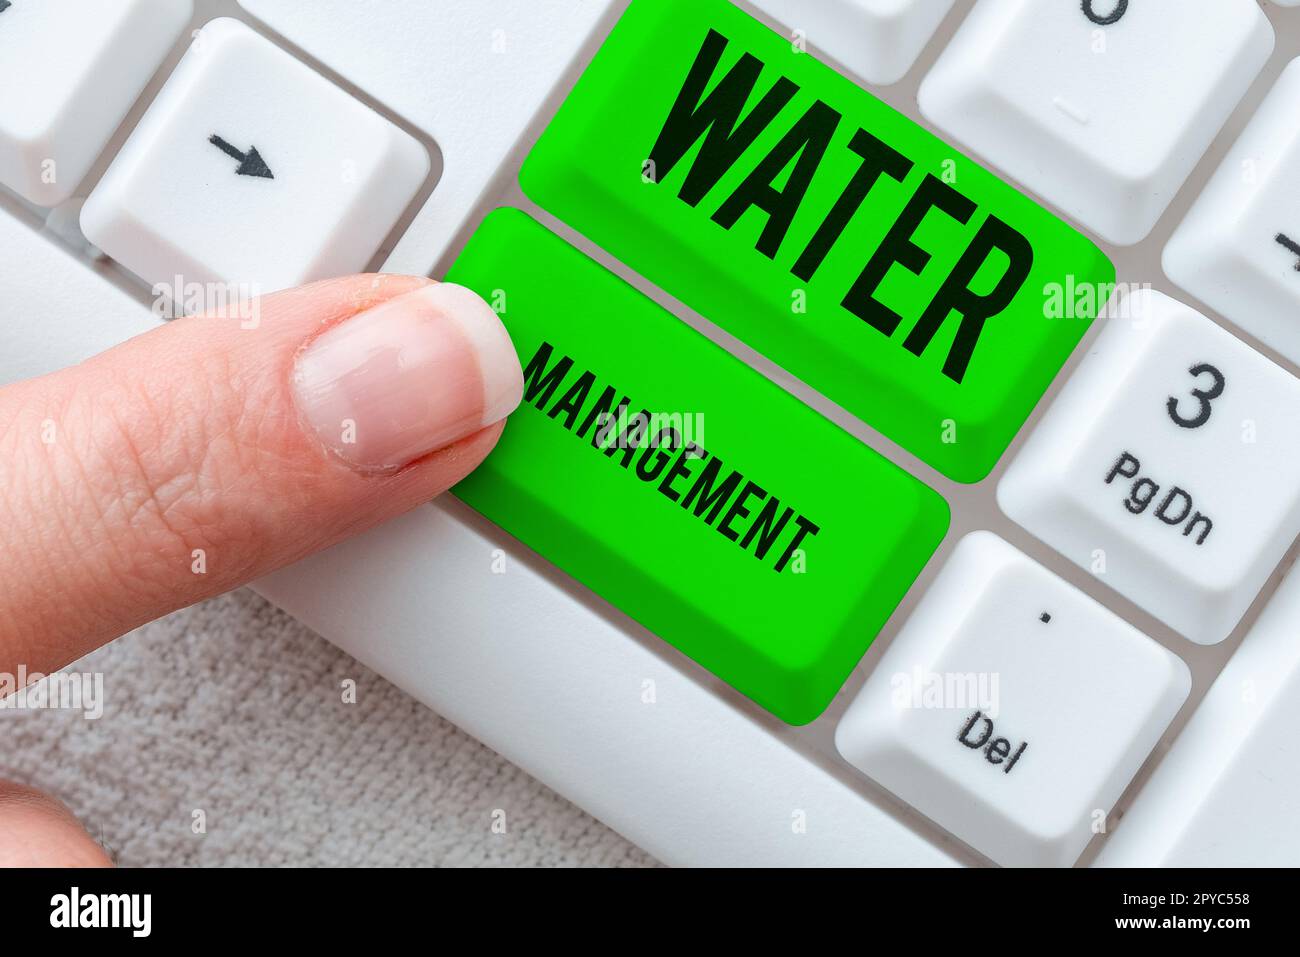 Titolo concettuale Gestione dell'acqua. Internet Concept utilizzo ottimale delle risorse idriche in base a politiche dell'acqua definite Foto Stock